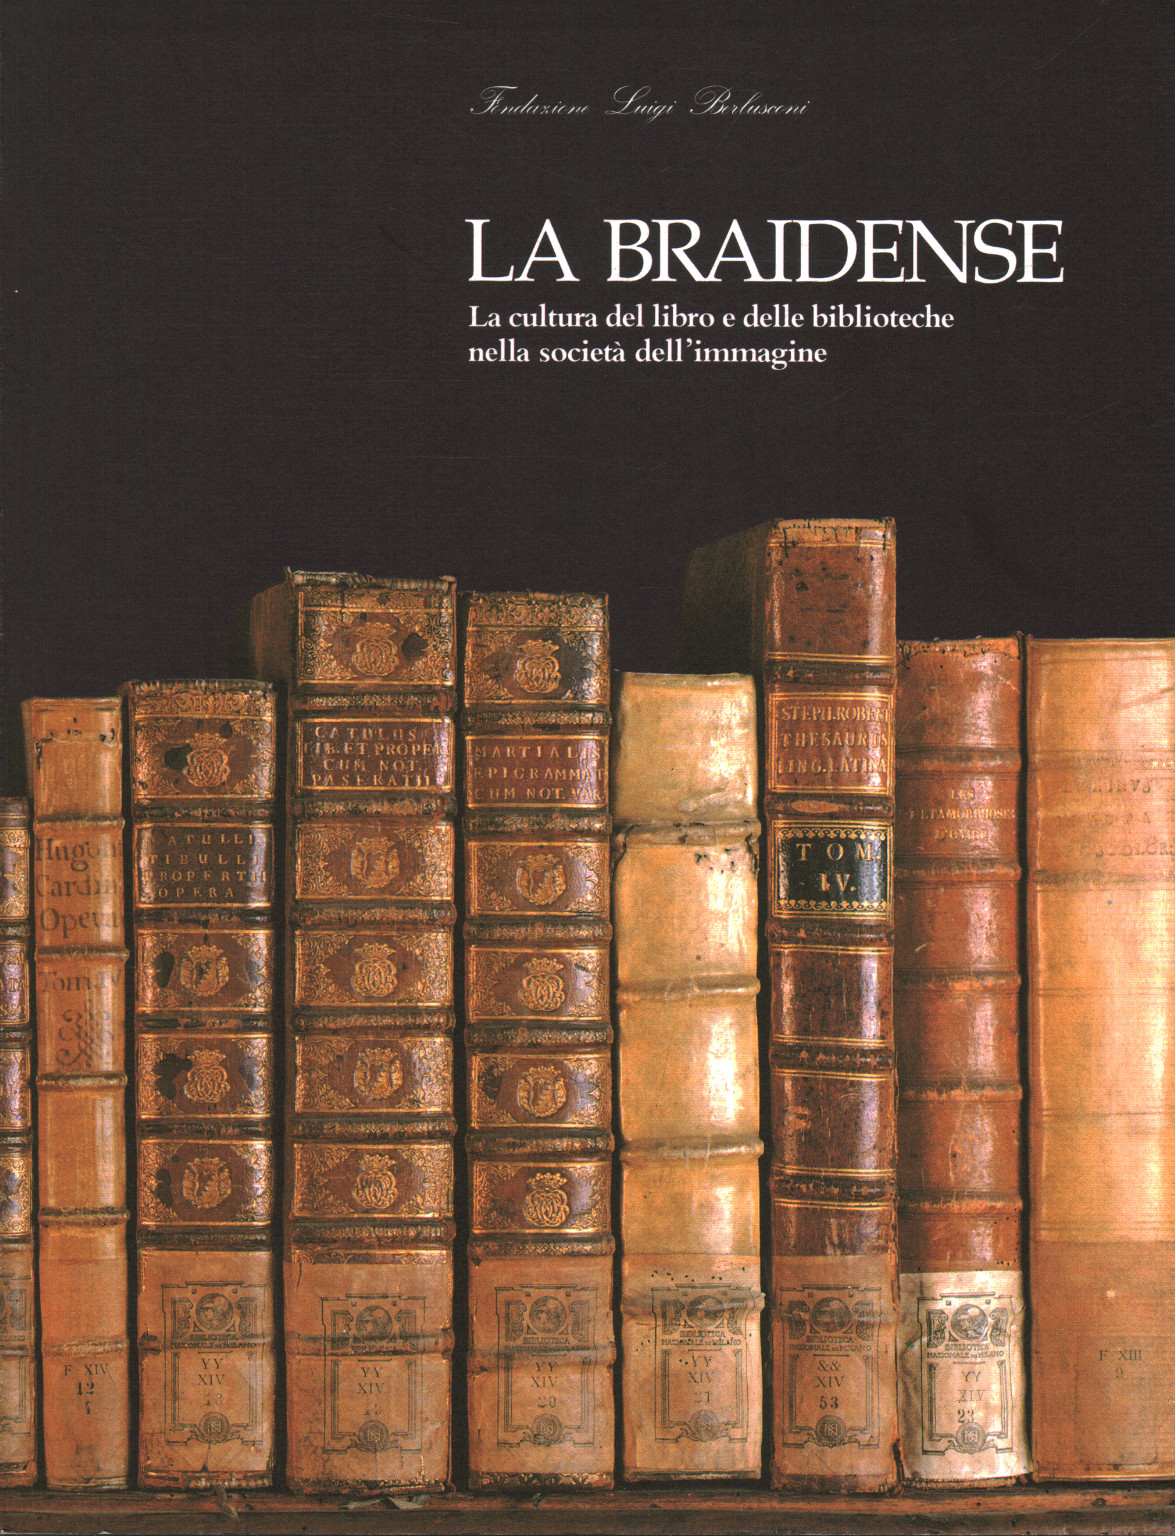 The Braidense